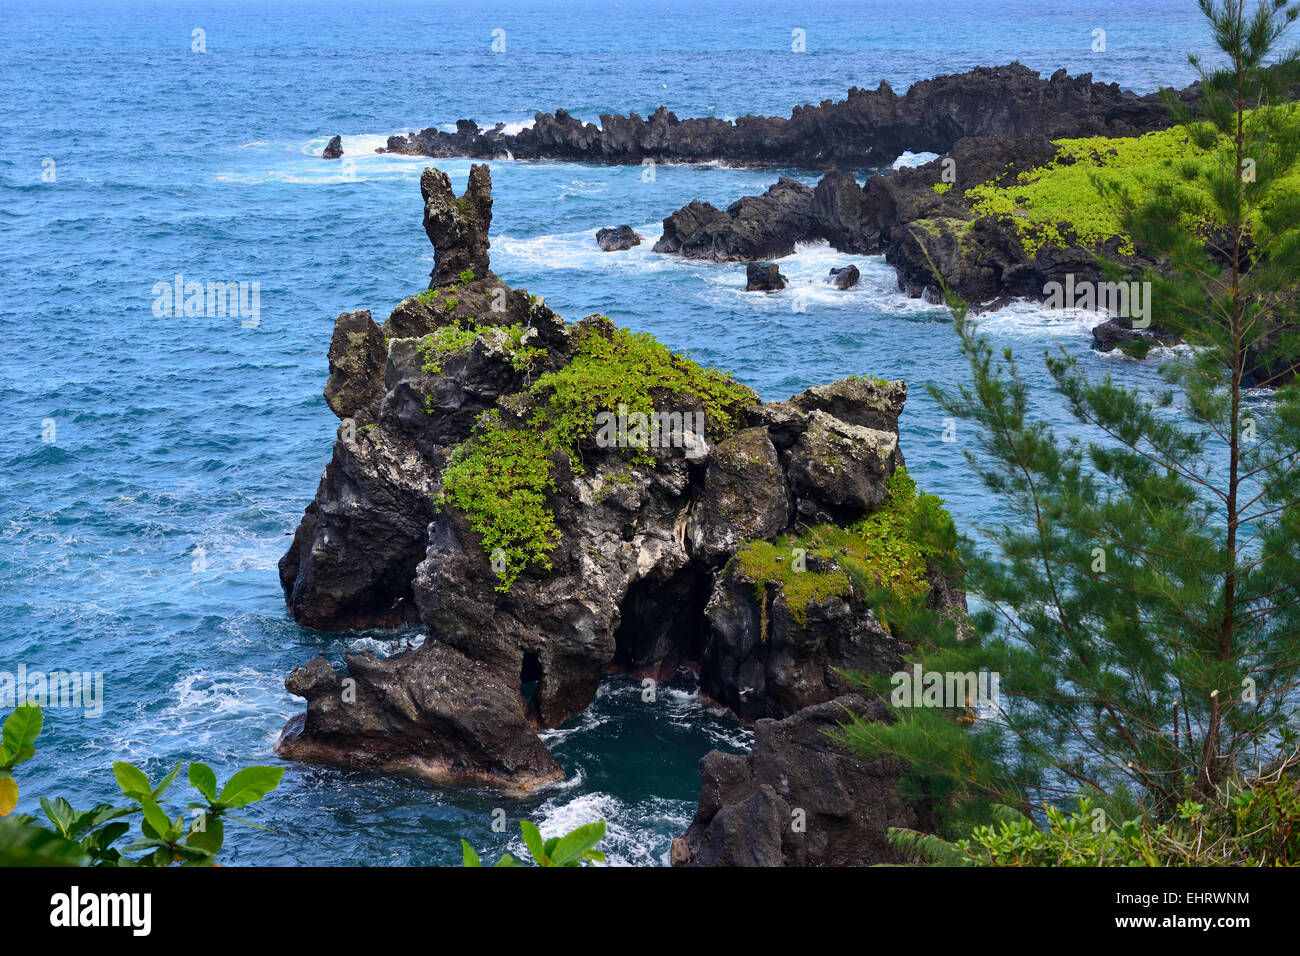 Seabird colony in Wai'anapanapa State Park, Hana Coast, Maui, Hawaii, USA Stock Photo